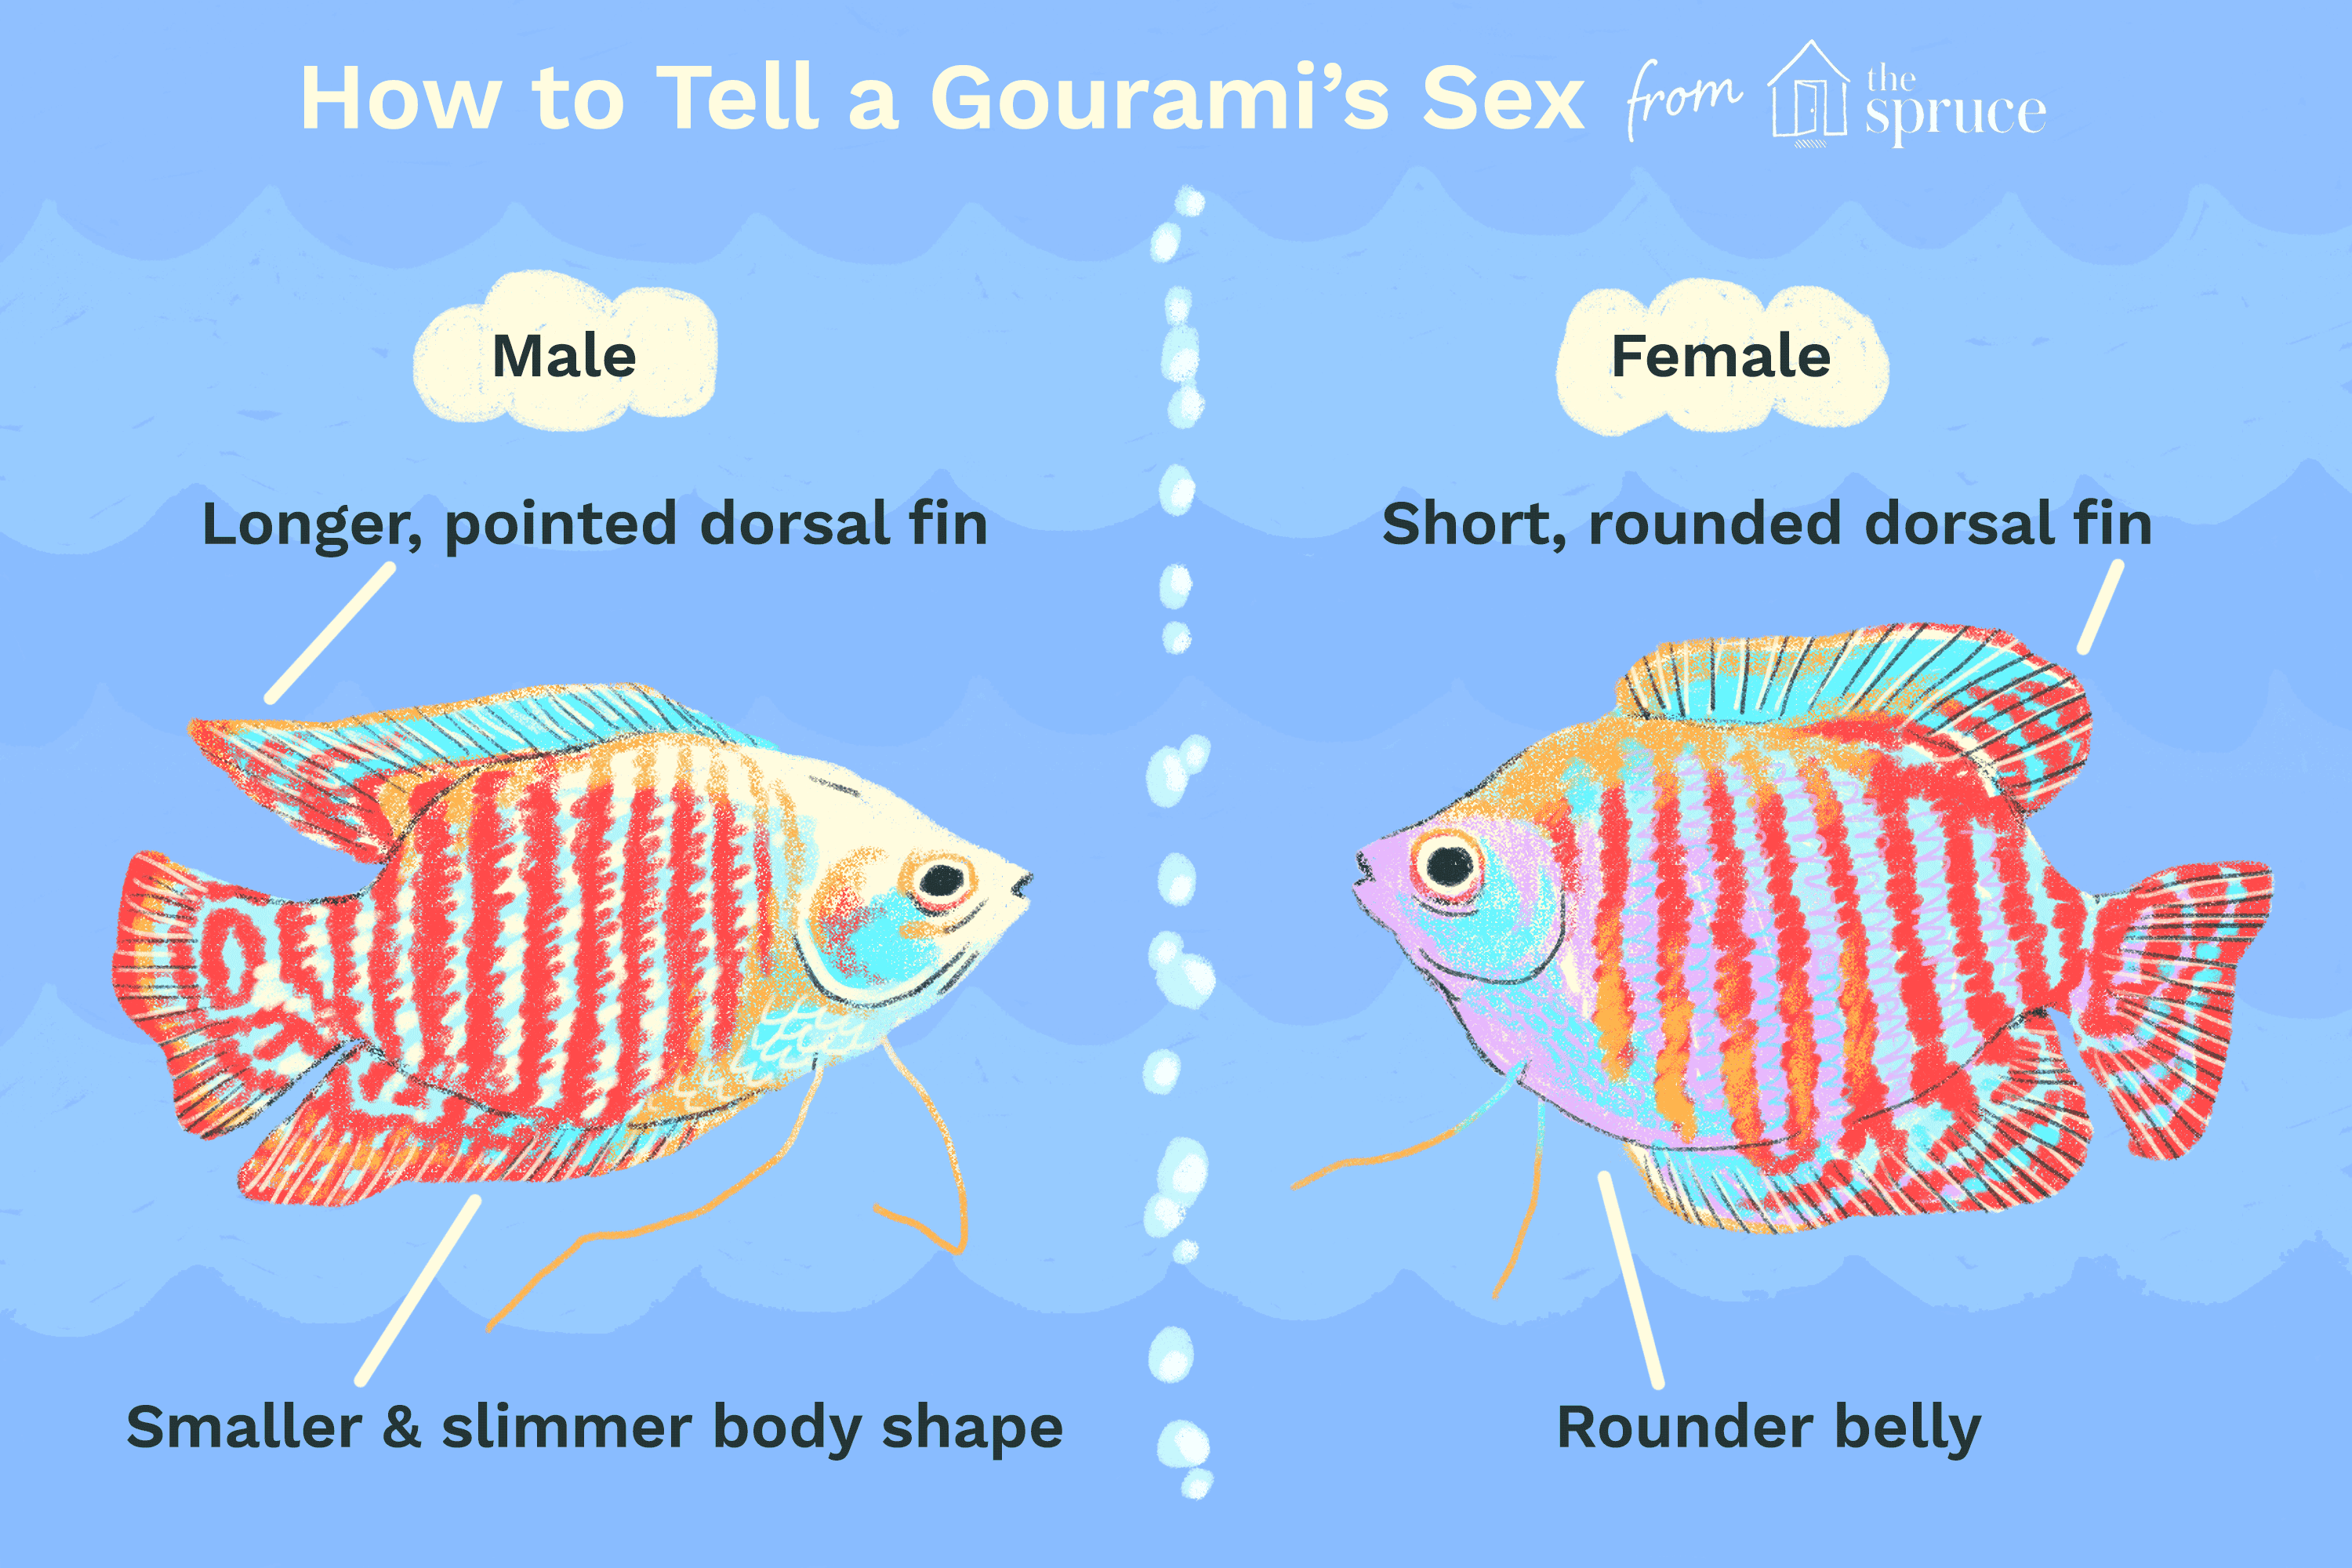 Hur vet jag om en Gourami är hane eller hona?